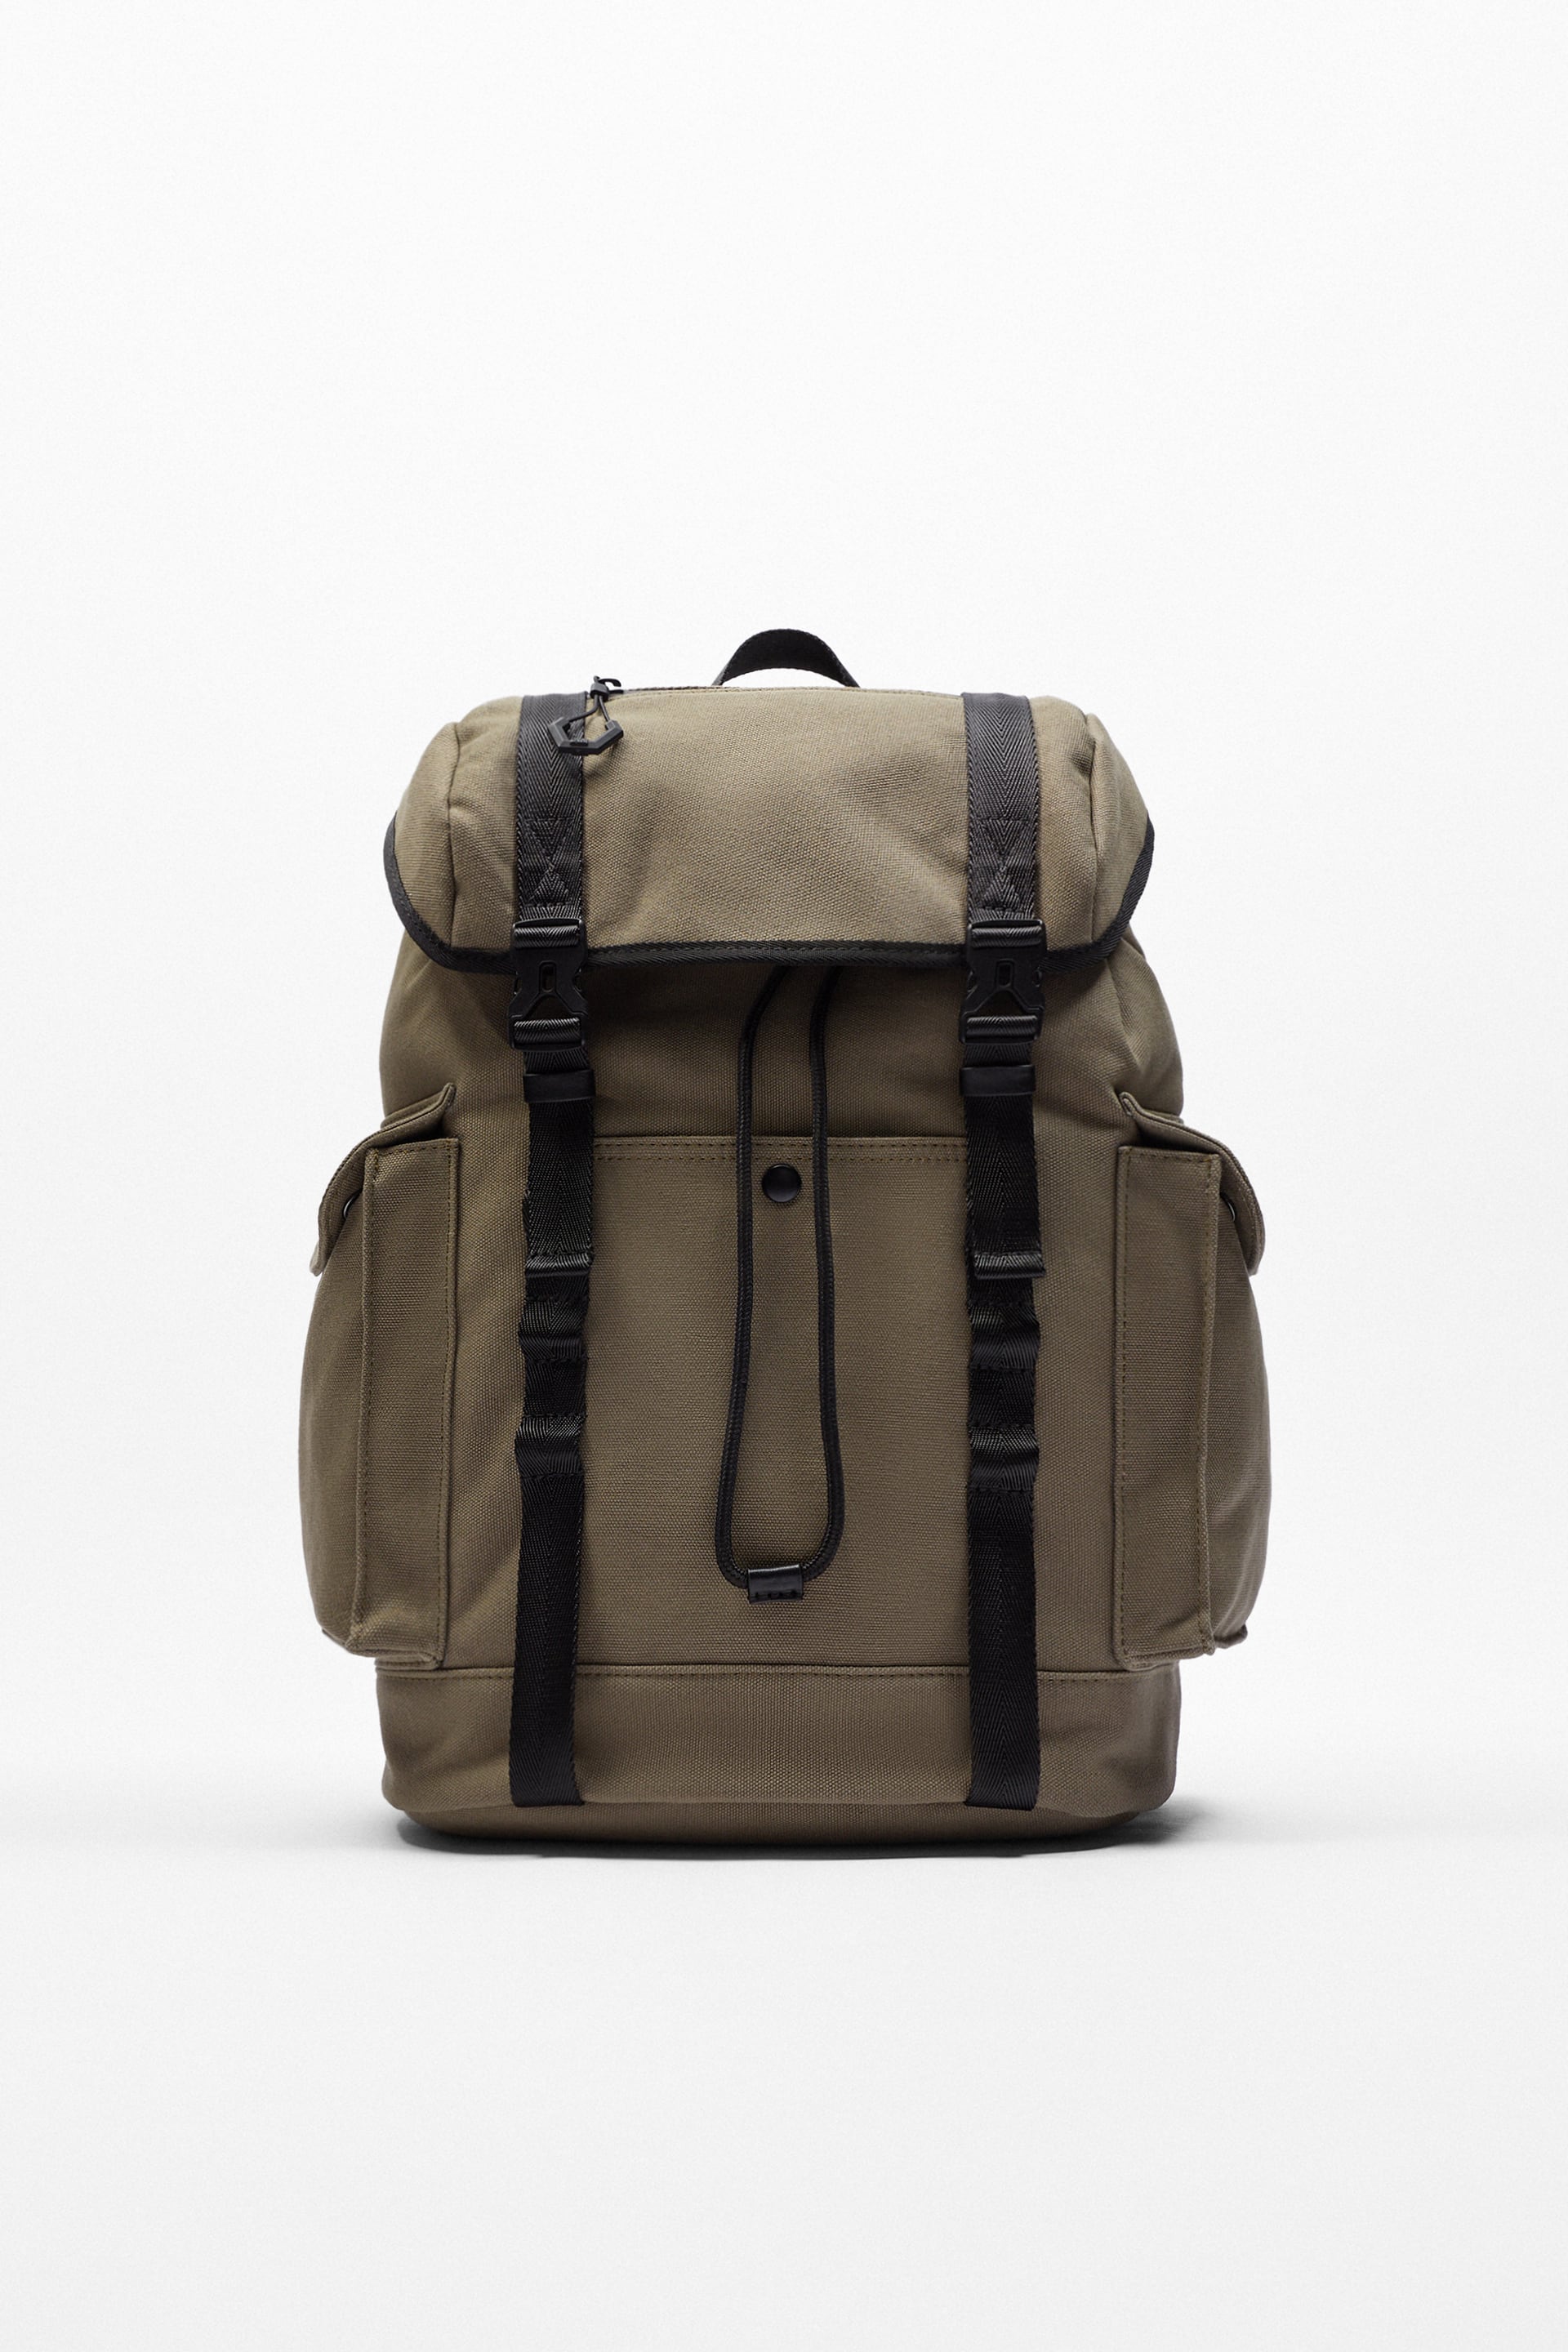 Zara Explorer Backpack | ubicaciondepersonas.cdmx.gob.mx